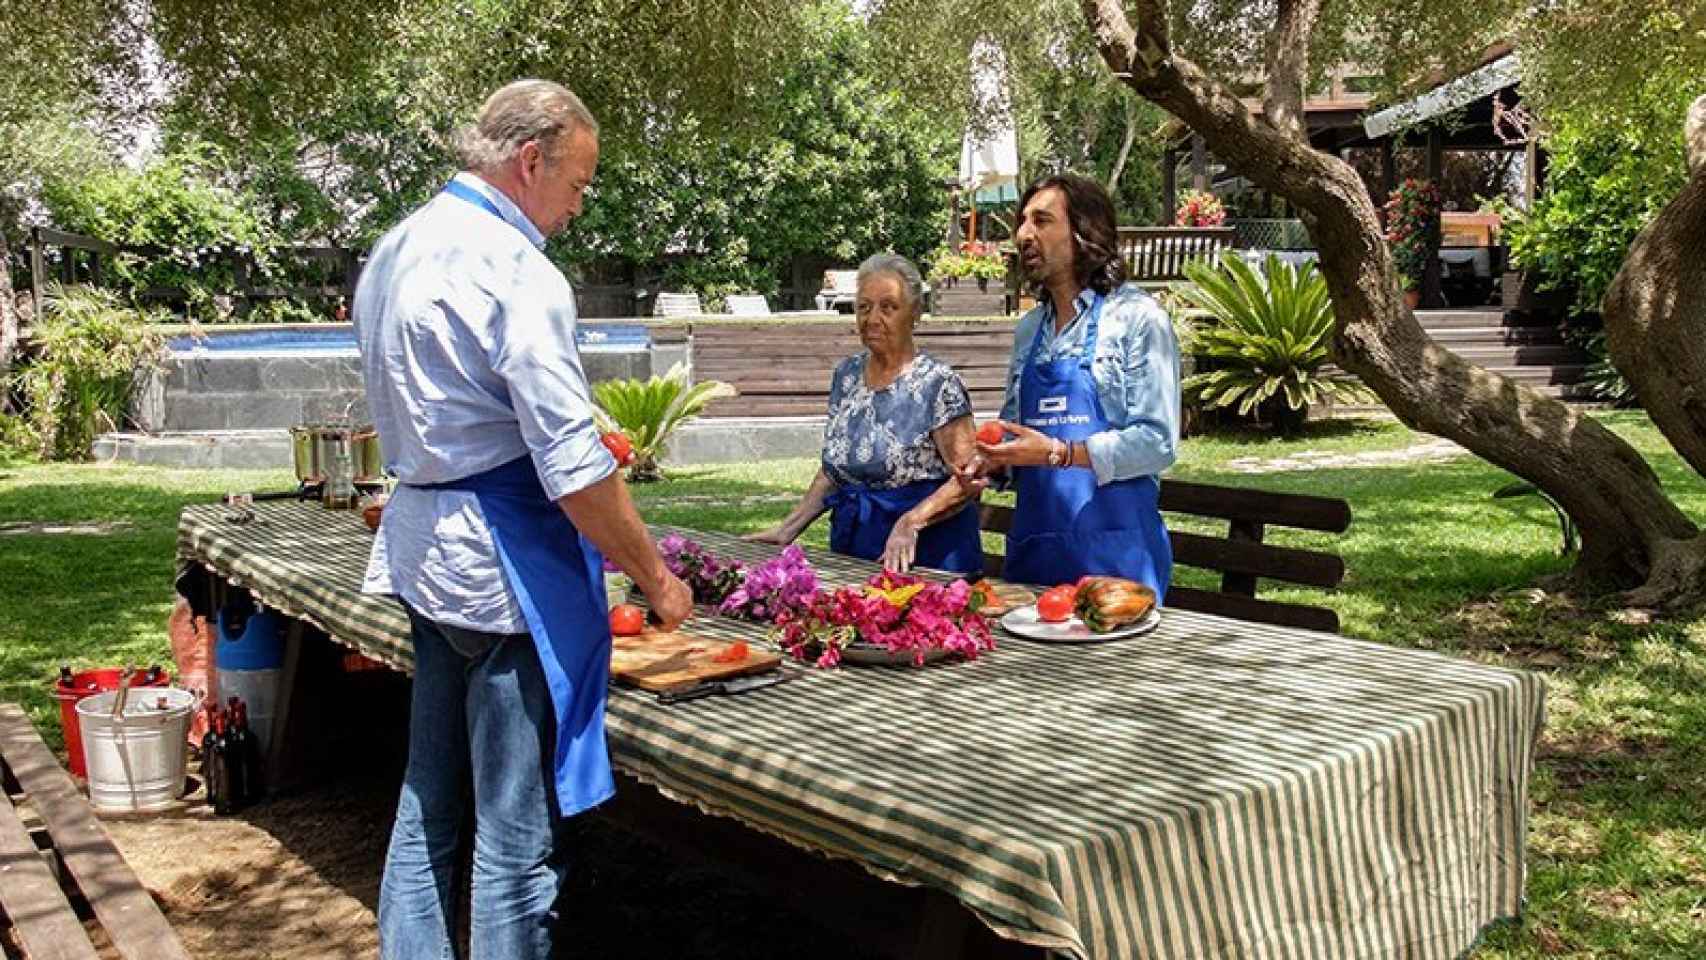 Escena del programa de este martes con Bertín, Antonio Carmona y su madre cocinando en el exterior.